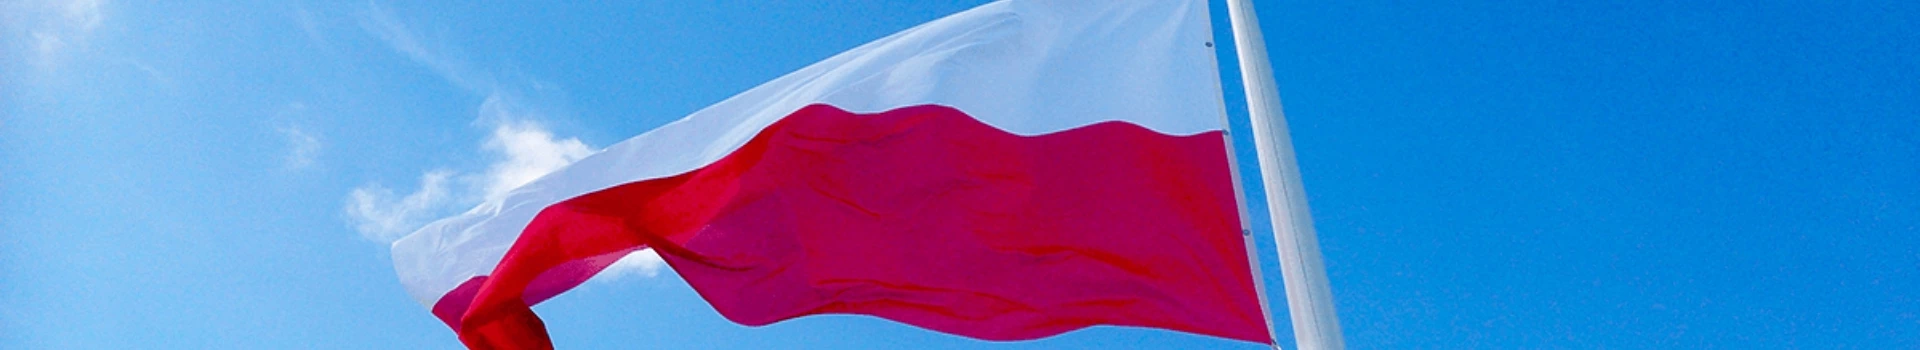 flaga Polski rozwiana wiatrem